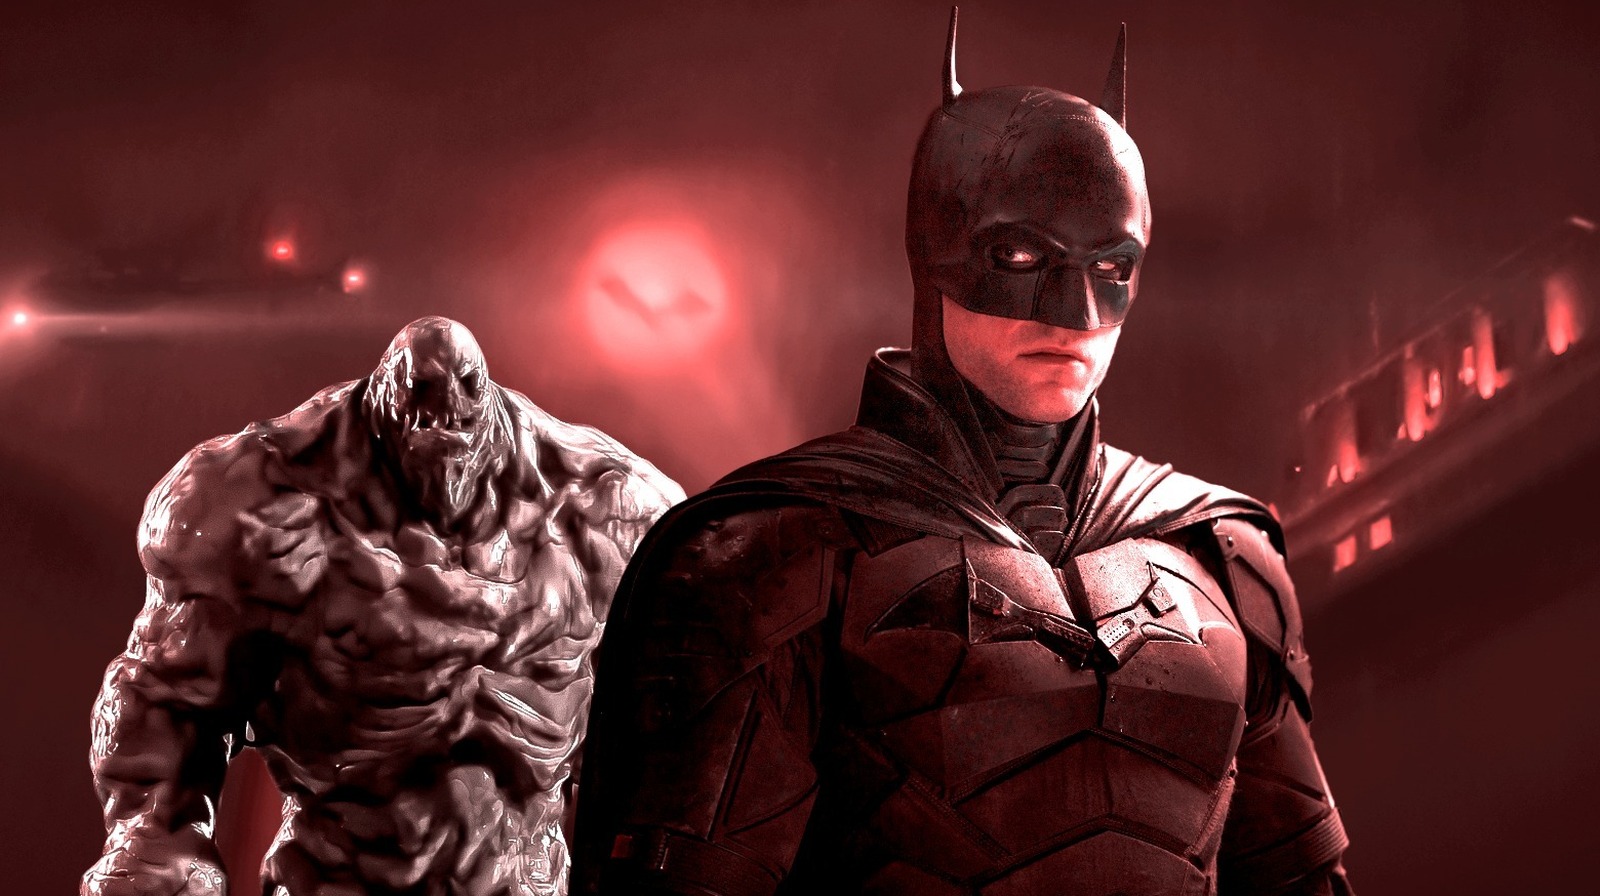 Dear DC Studios, Please Let Batman Fight Villains With Superpowers